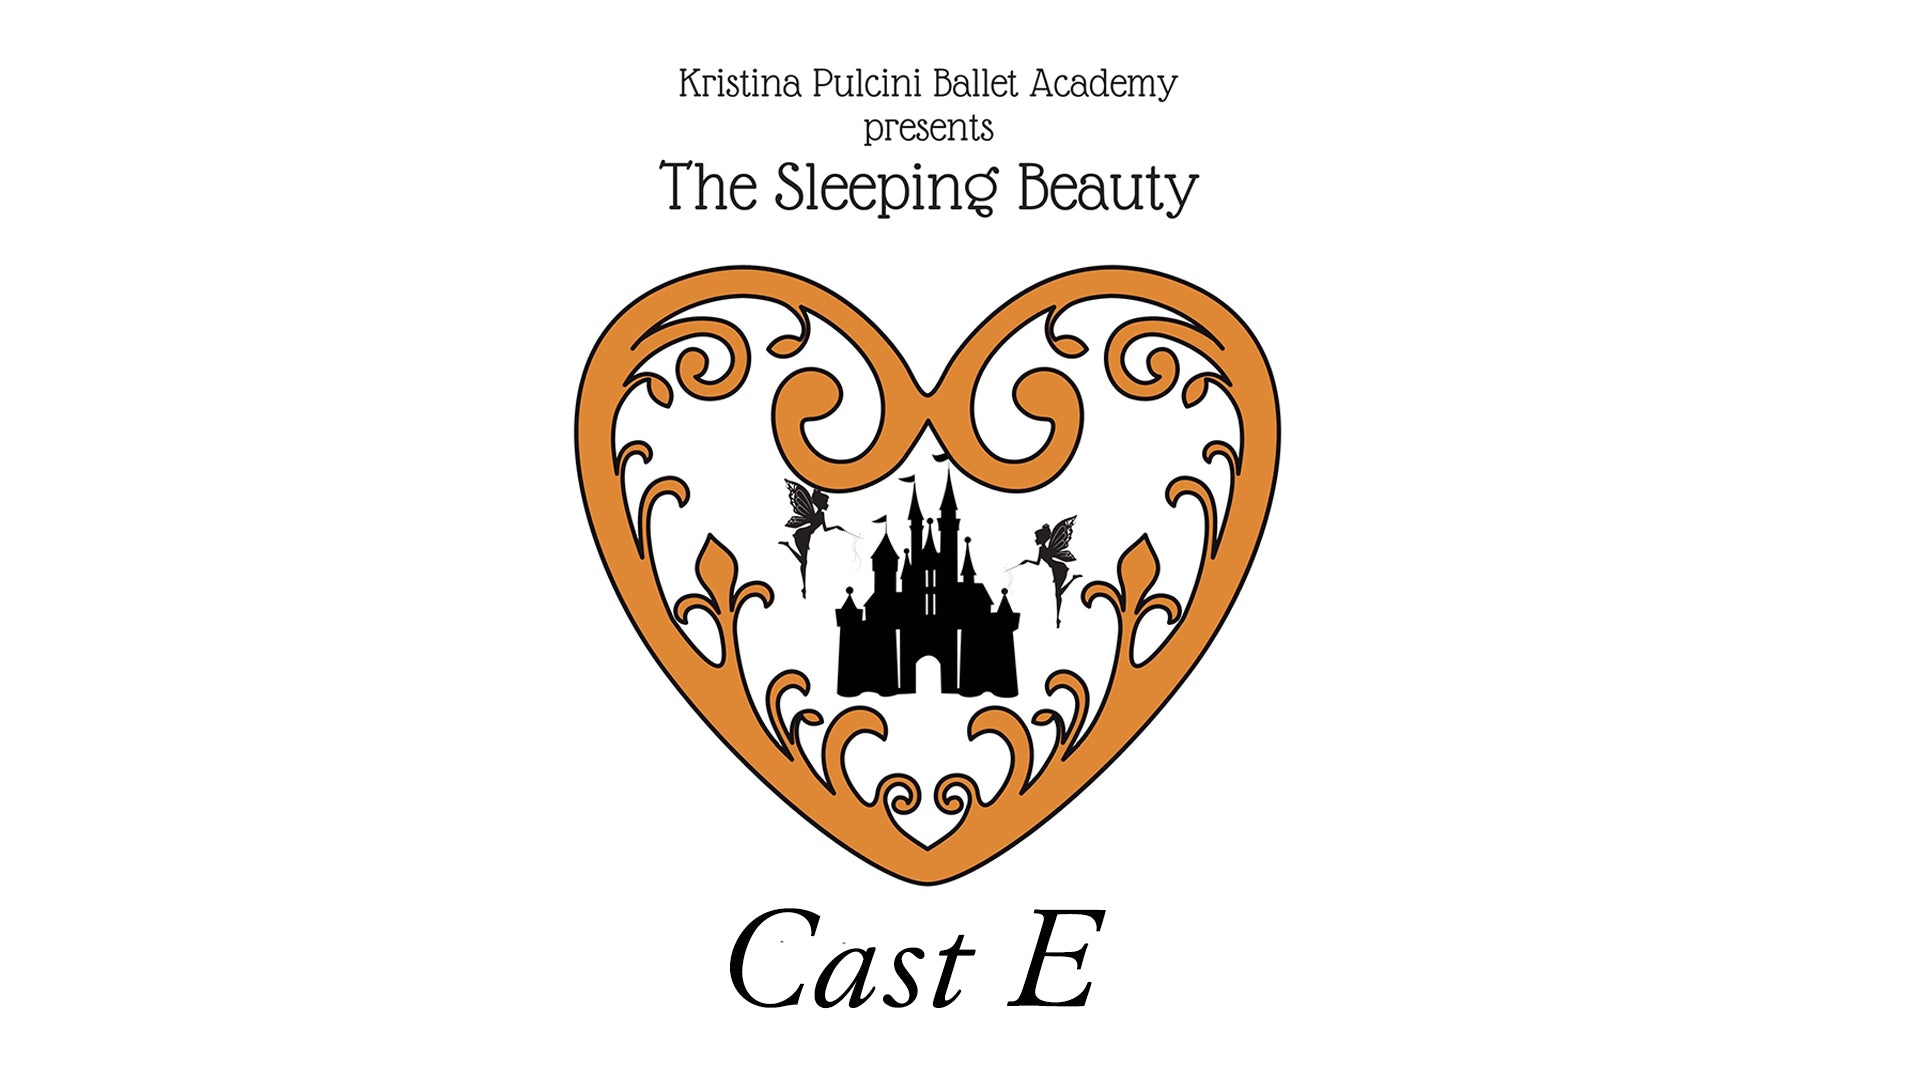 KP Ballet Academy presents "Sleeping Beauty" (2021) - Cast E